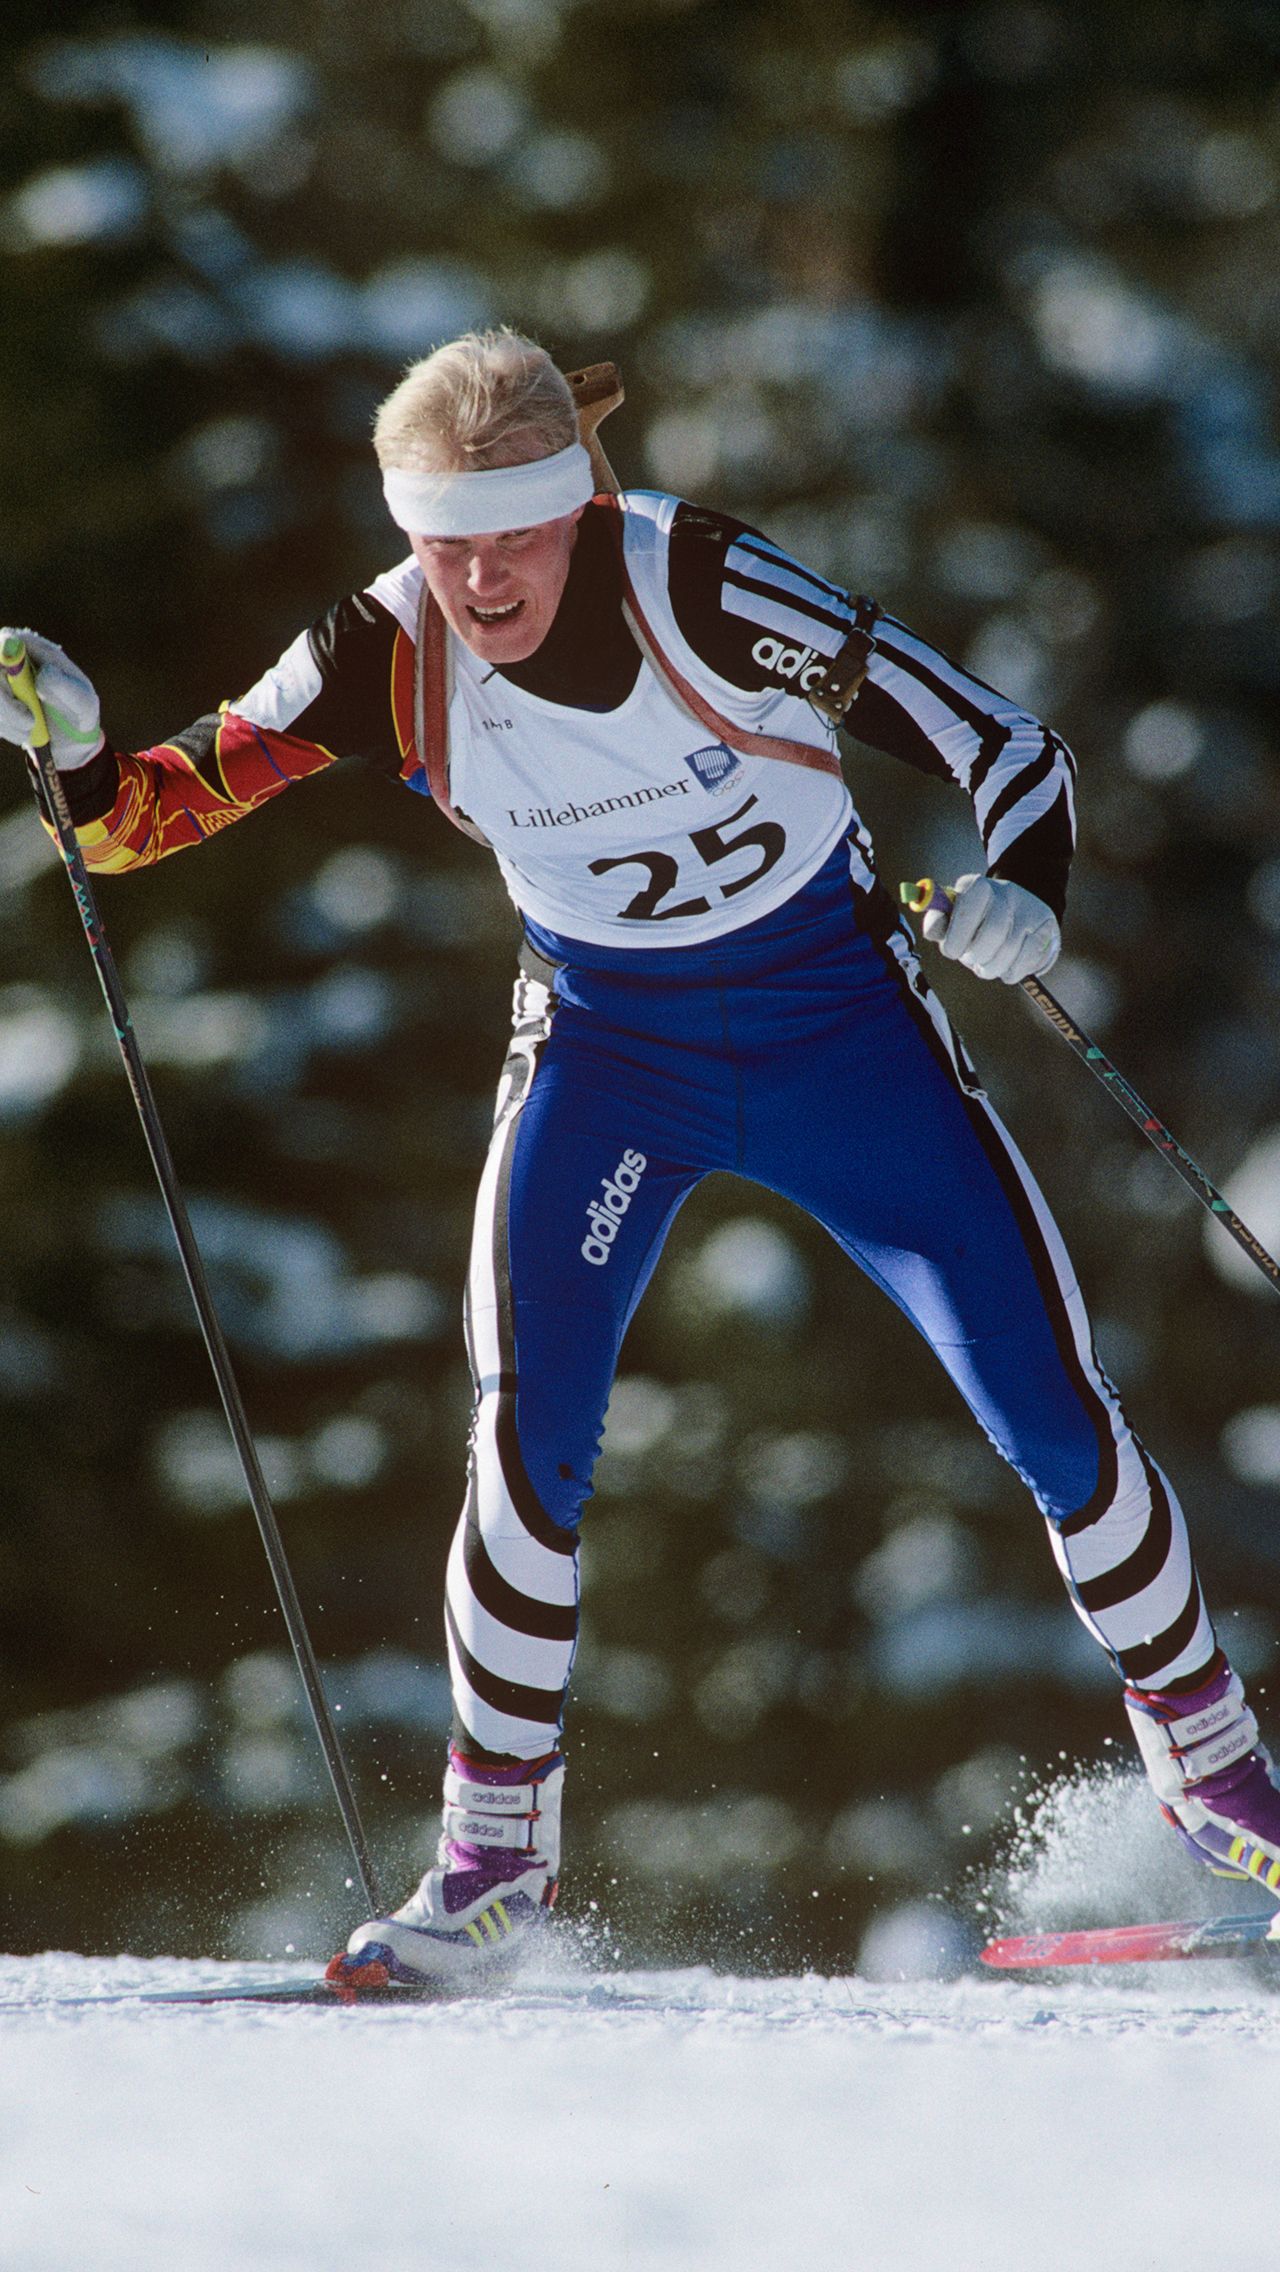 Ещё один уникальный биатлонист, который смог показать себя в лыжах — Сергей Чепиков. После двух Олимпиад, где он выиграл медали в биатлоне, Чепиков перешёл в лыжи и представлял страну на ОИ-1998.